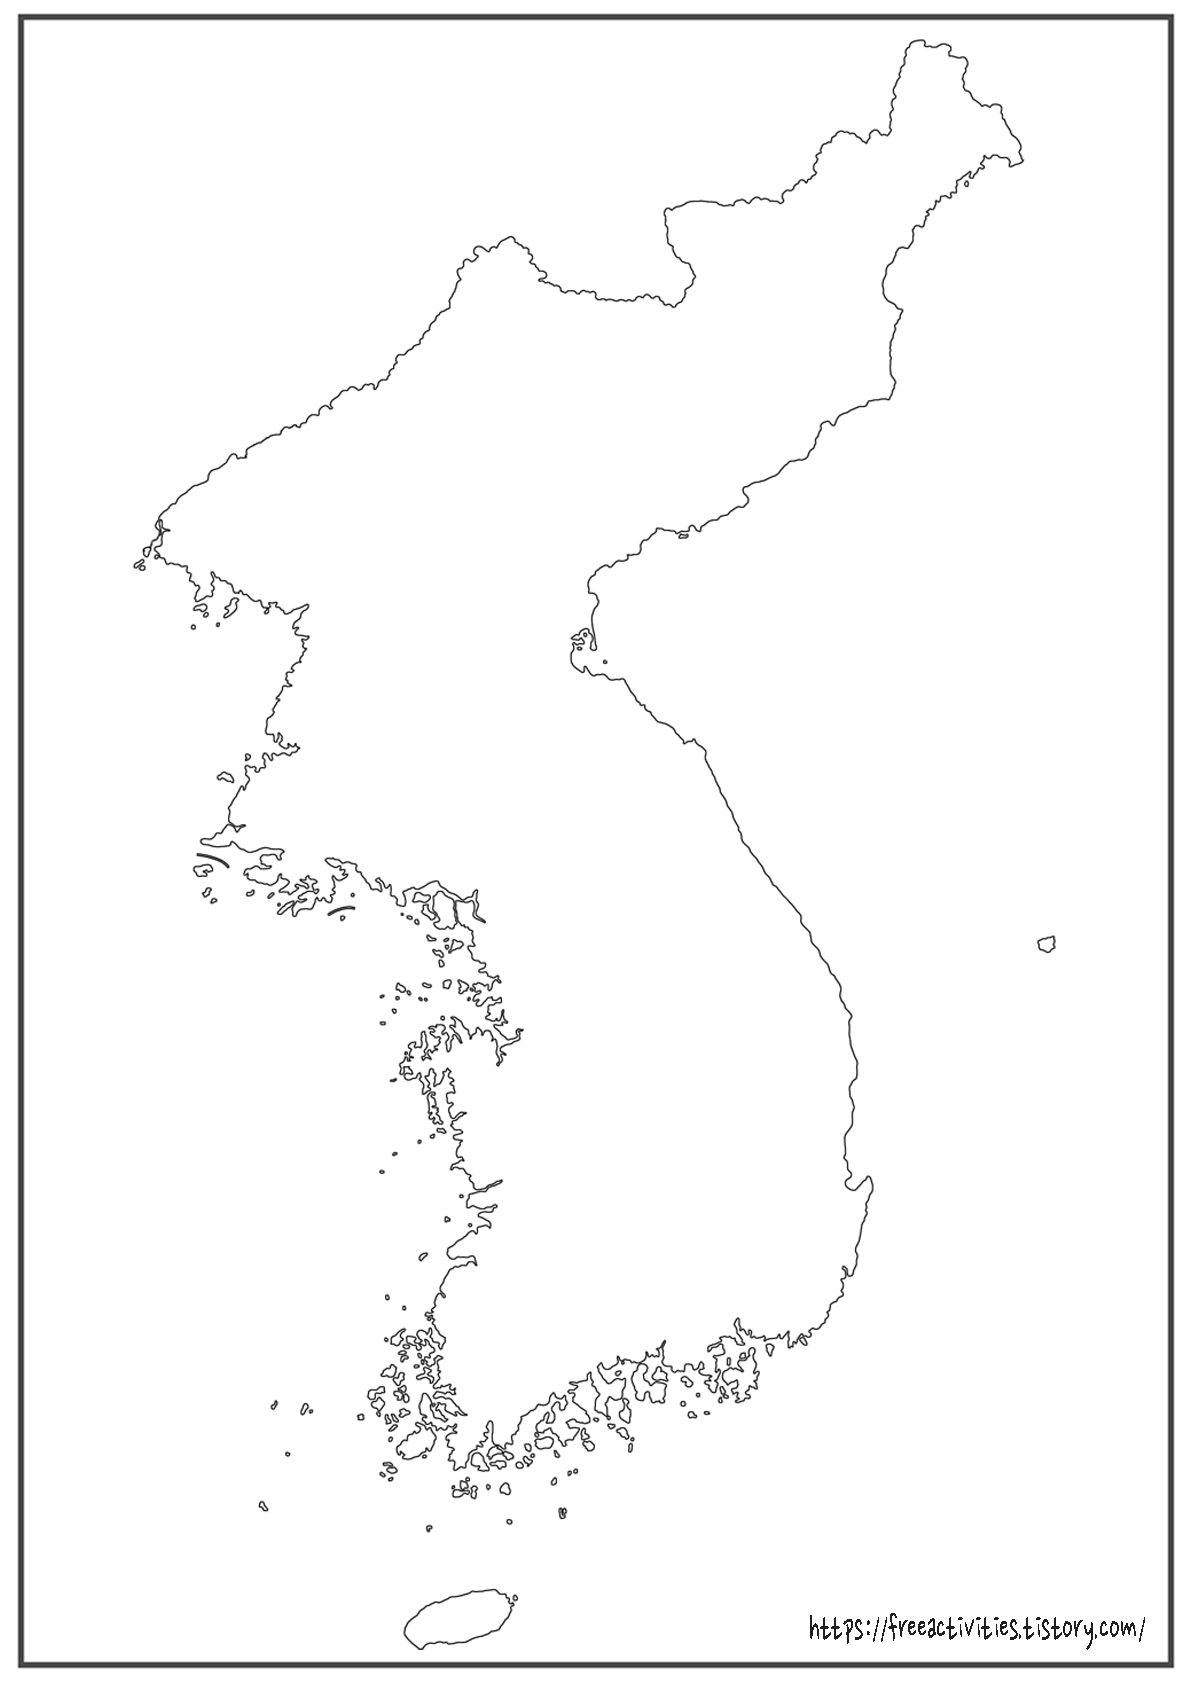 한국 및 한반도 지도 - 무료 컬러링 도안 / 색칠공부 / Coloring Page